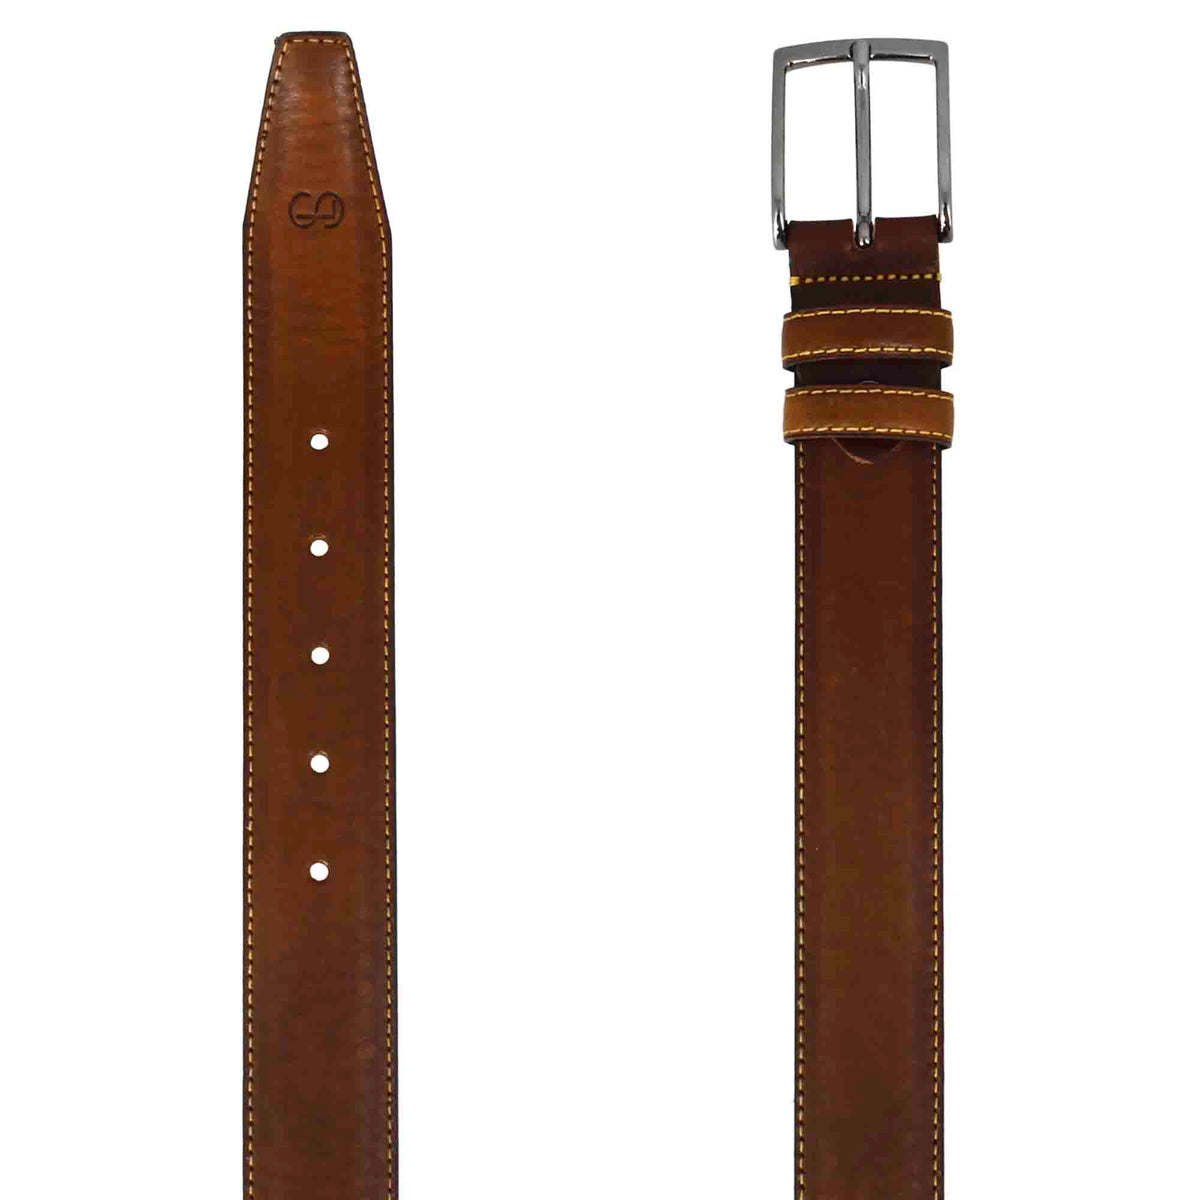 Elegant men's belt in brown full-grain leather